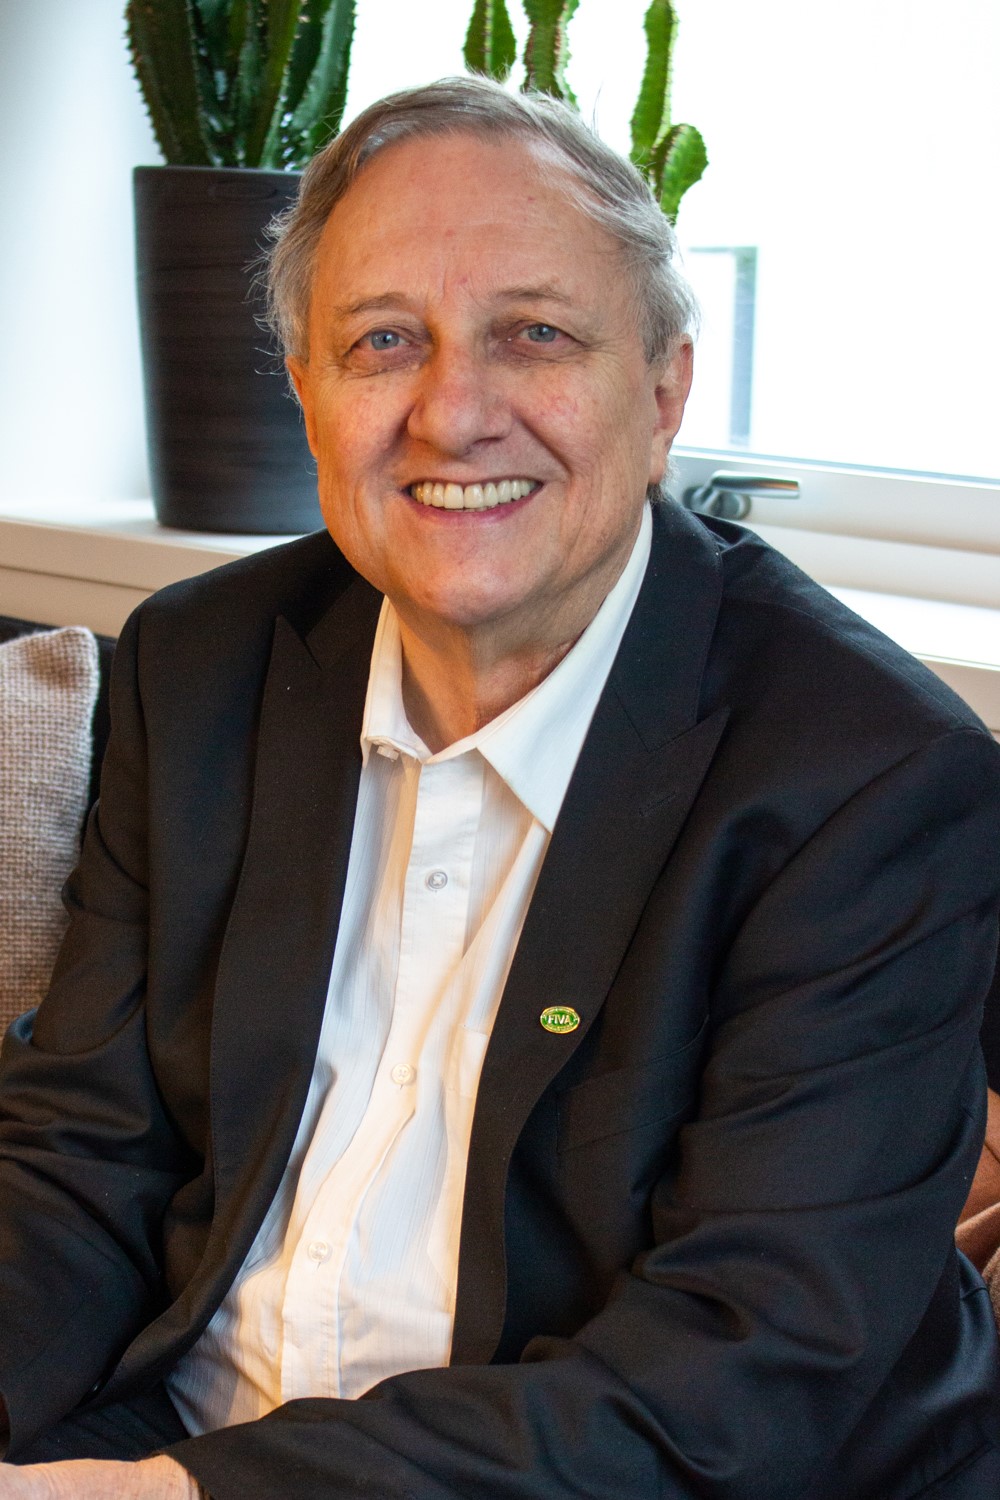 Peter Edqvist